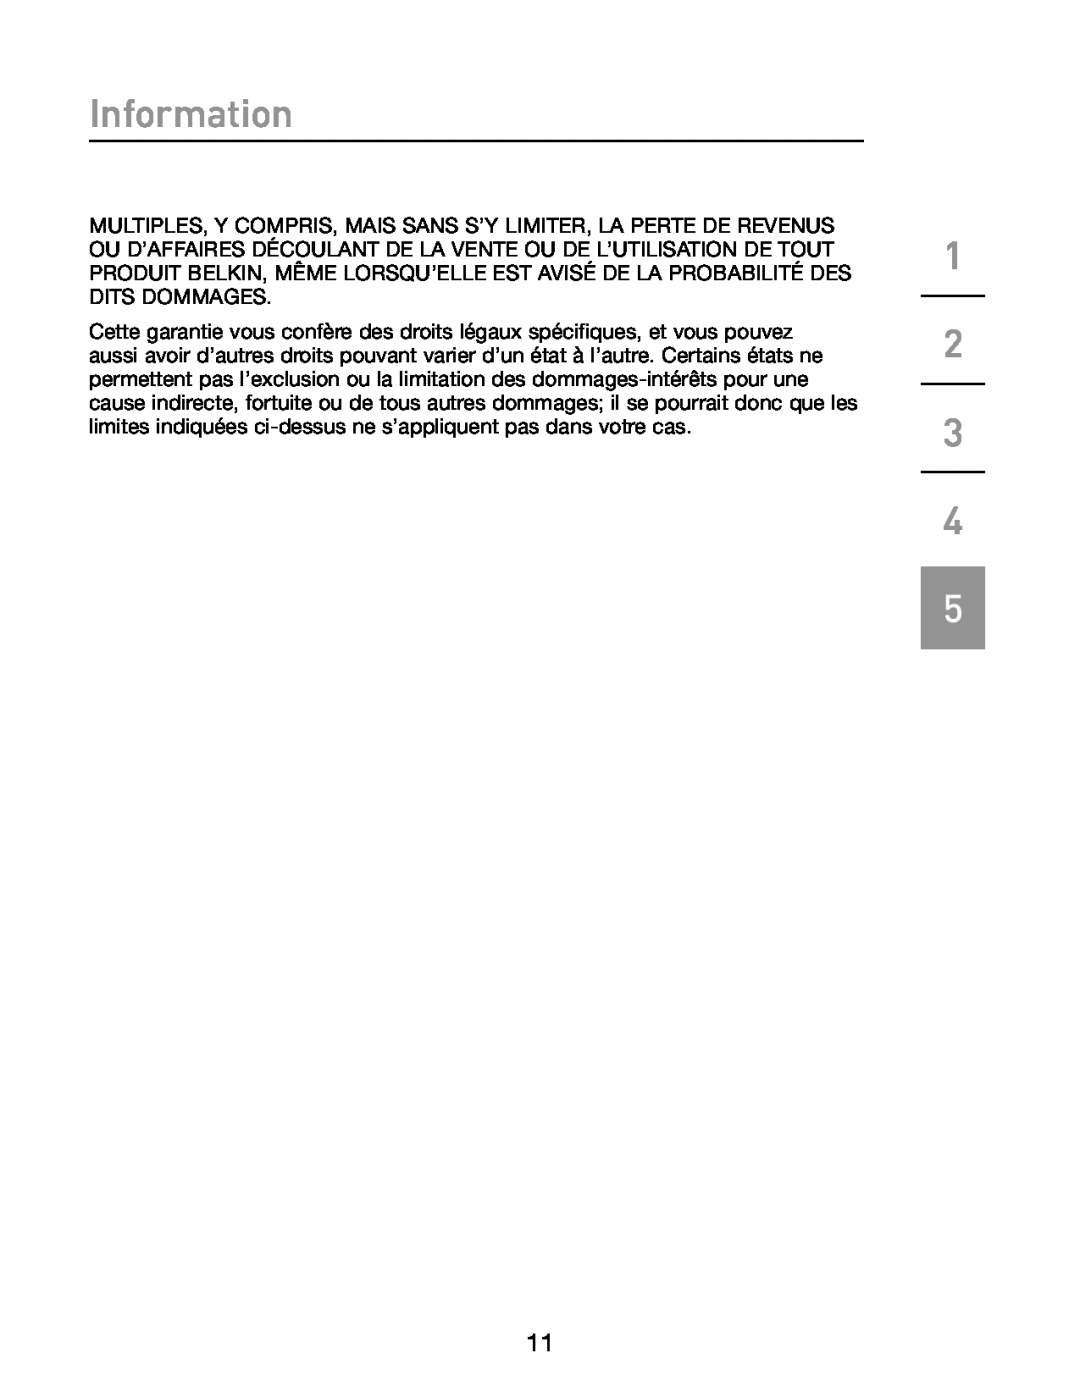 Belkin F5U514 manual Information 